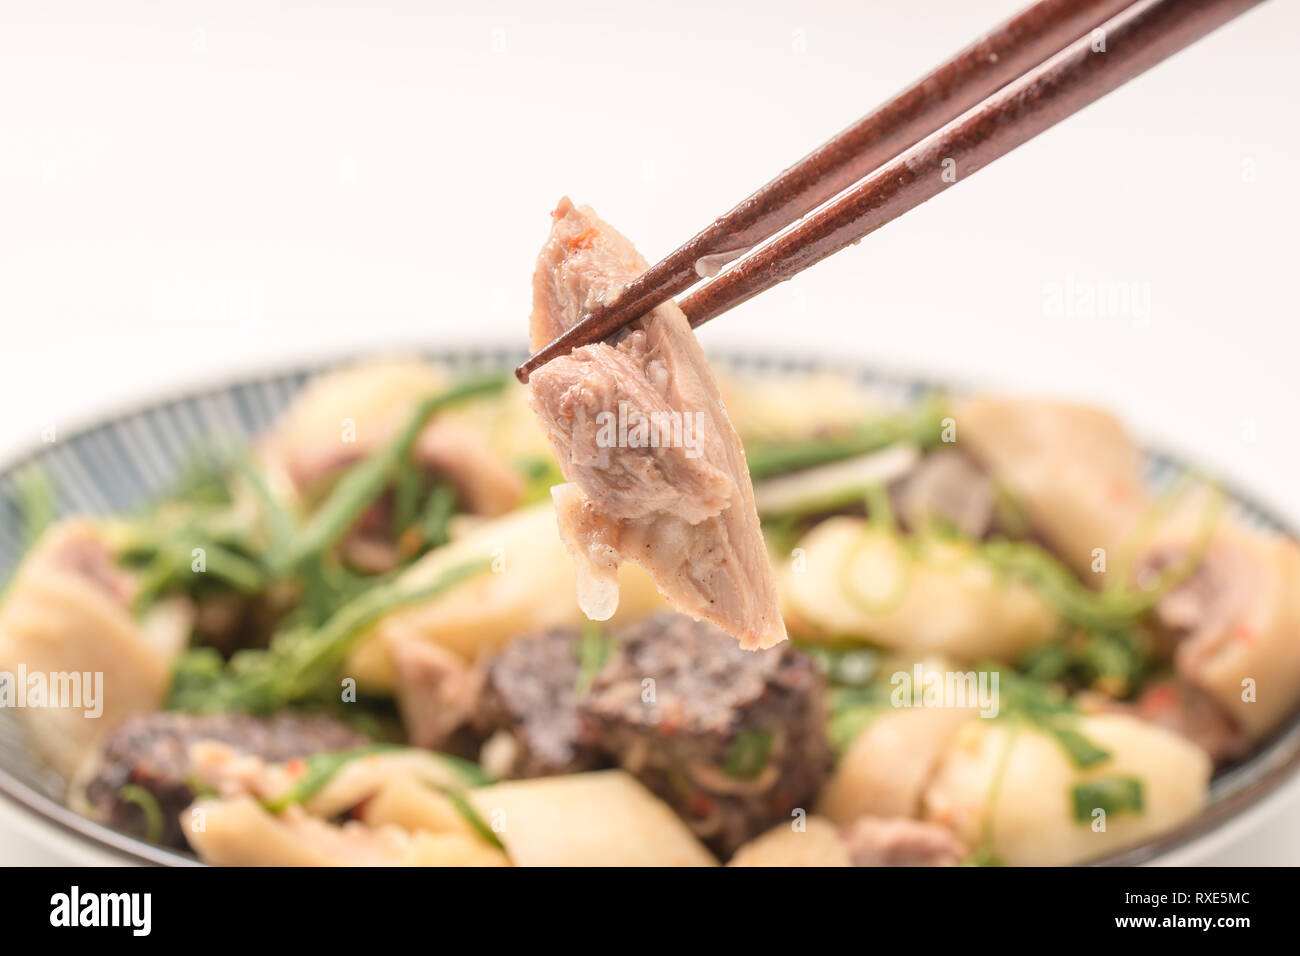 Taiwanische Essen, genannt salzig Huhn, das ist eine Art von traditionellen Lebensmitteln, Fleisch oder Geflügel gedünstet mit salzig und vor dem Servieren angespannt. Stockfoto